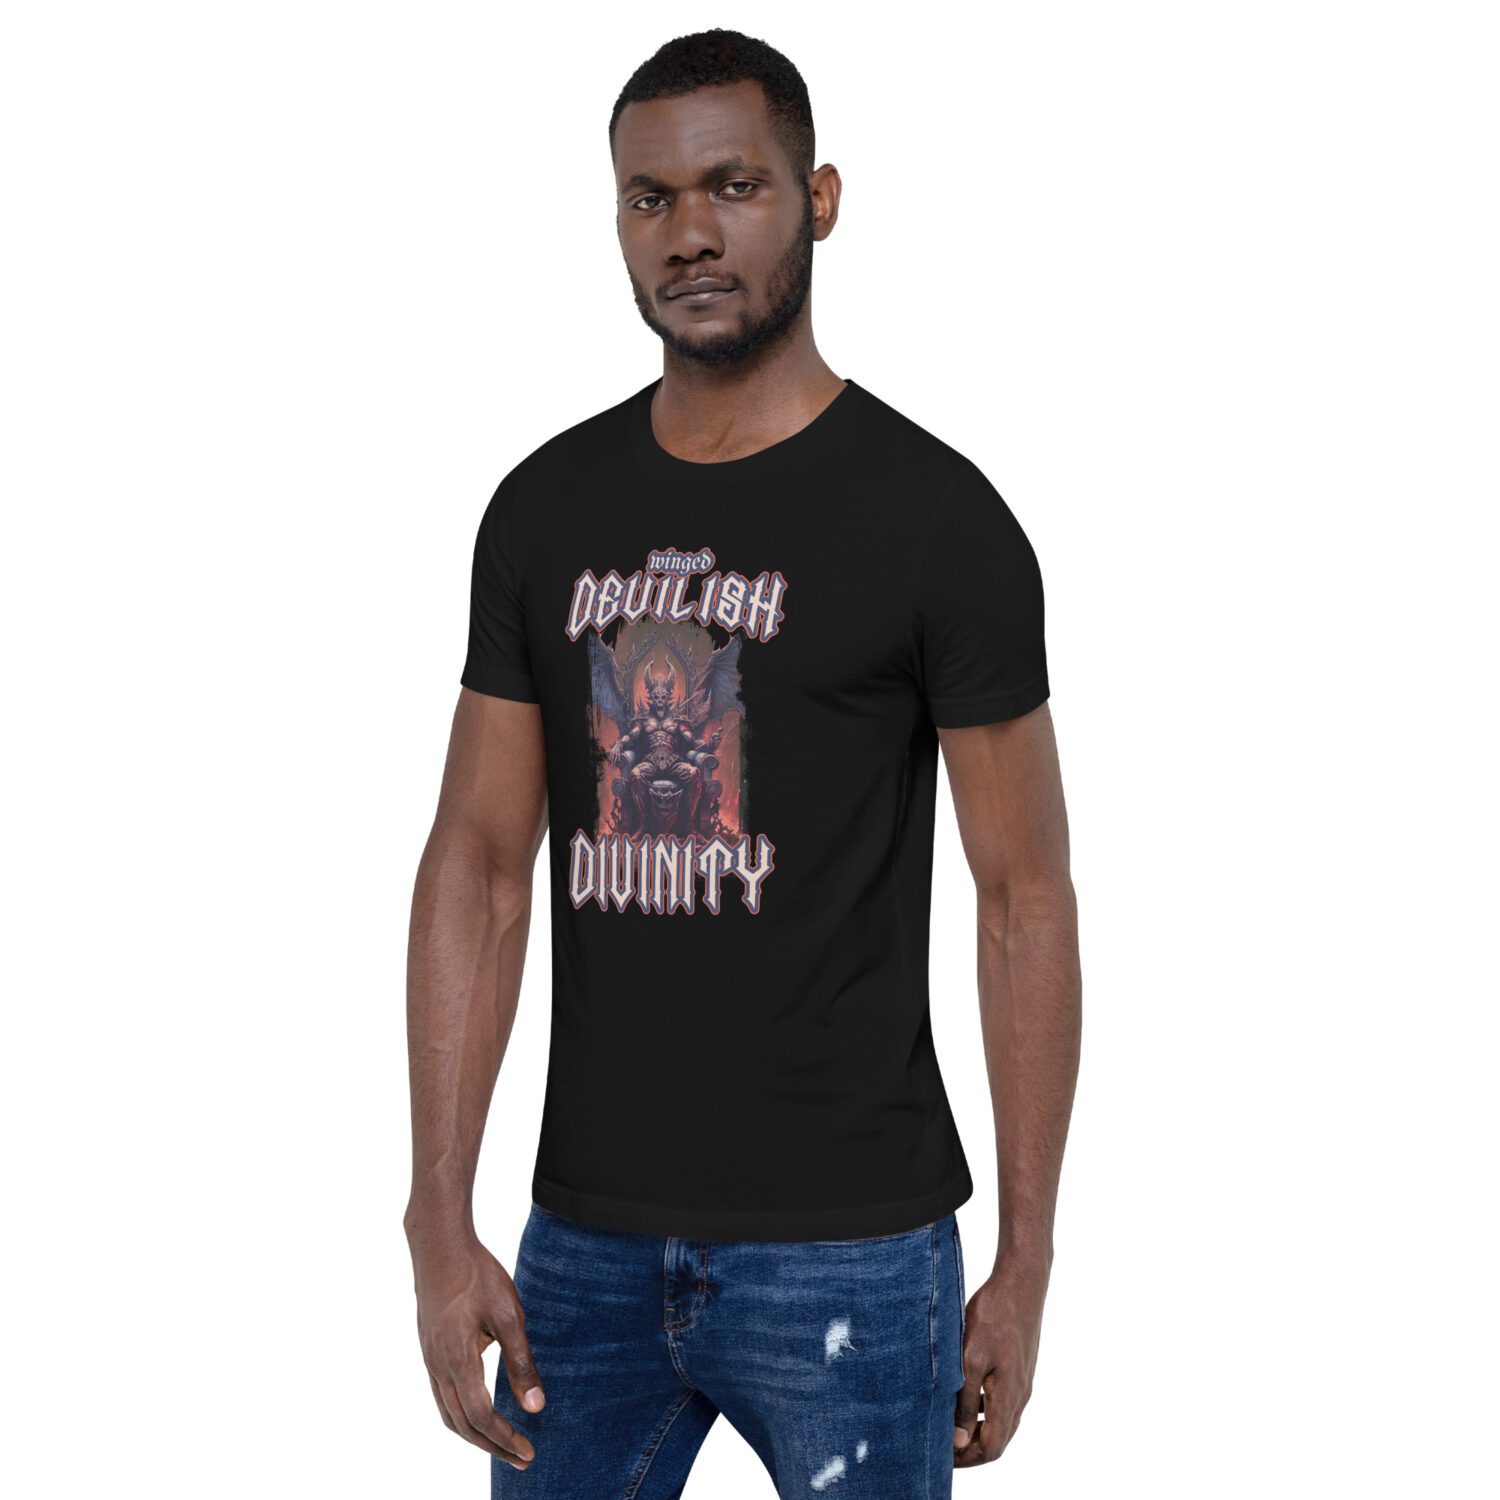 Unisex t-shirt 'Winged Devilish Divinity'